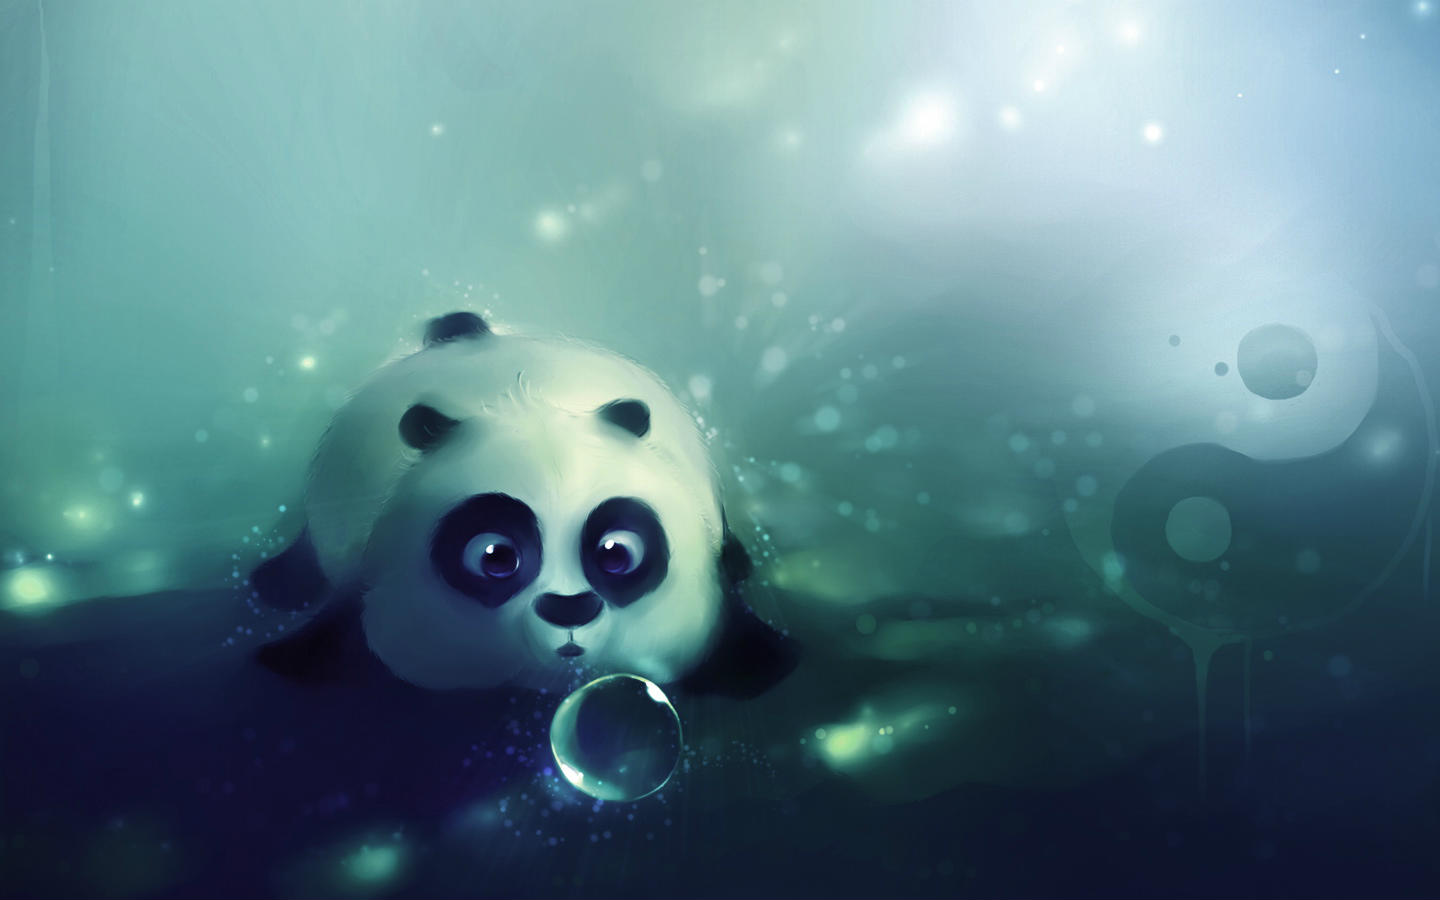 熊猫动漫图片超萌壁纸图片